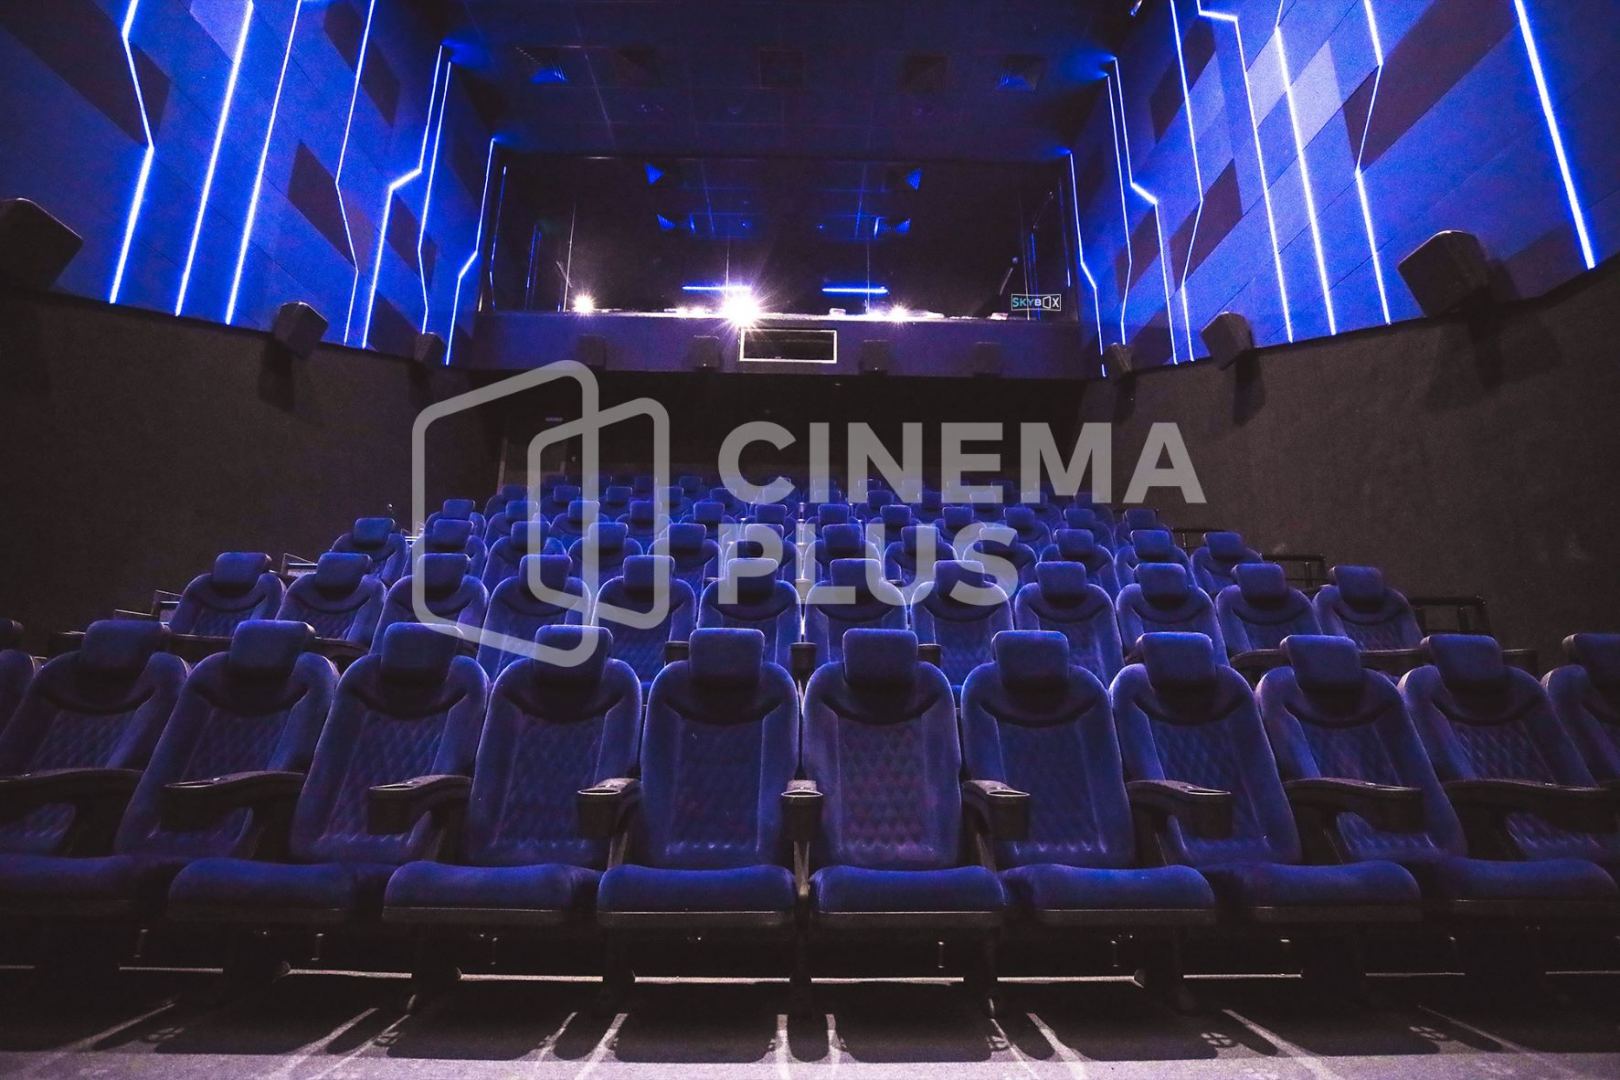 В Азербайджане открылся самый большой кинотеатр CinemaPlus (ФОТО)